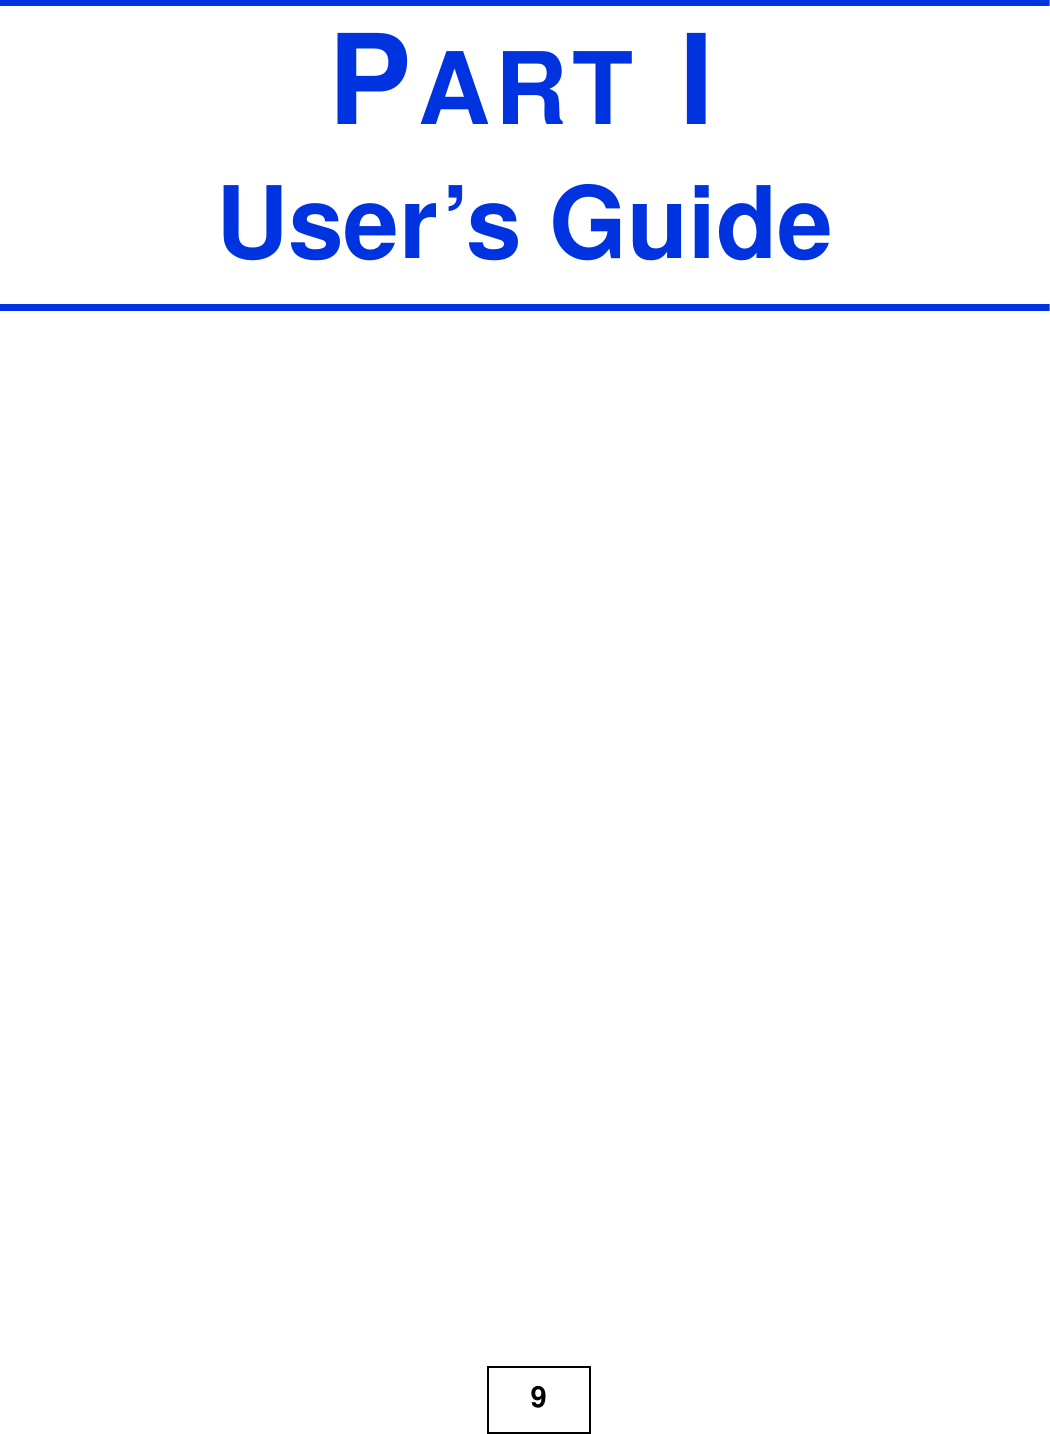 9PART IUser’s Guide 